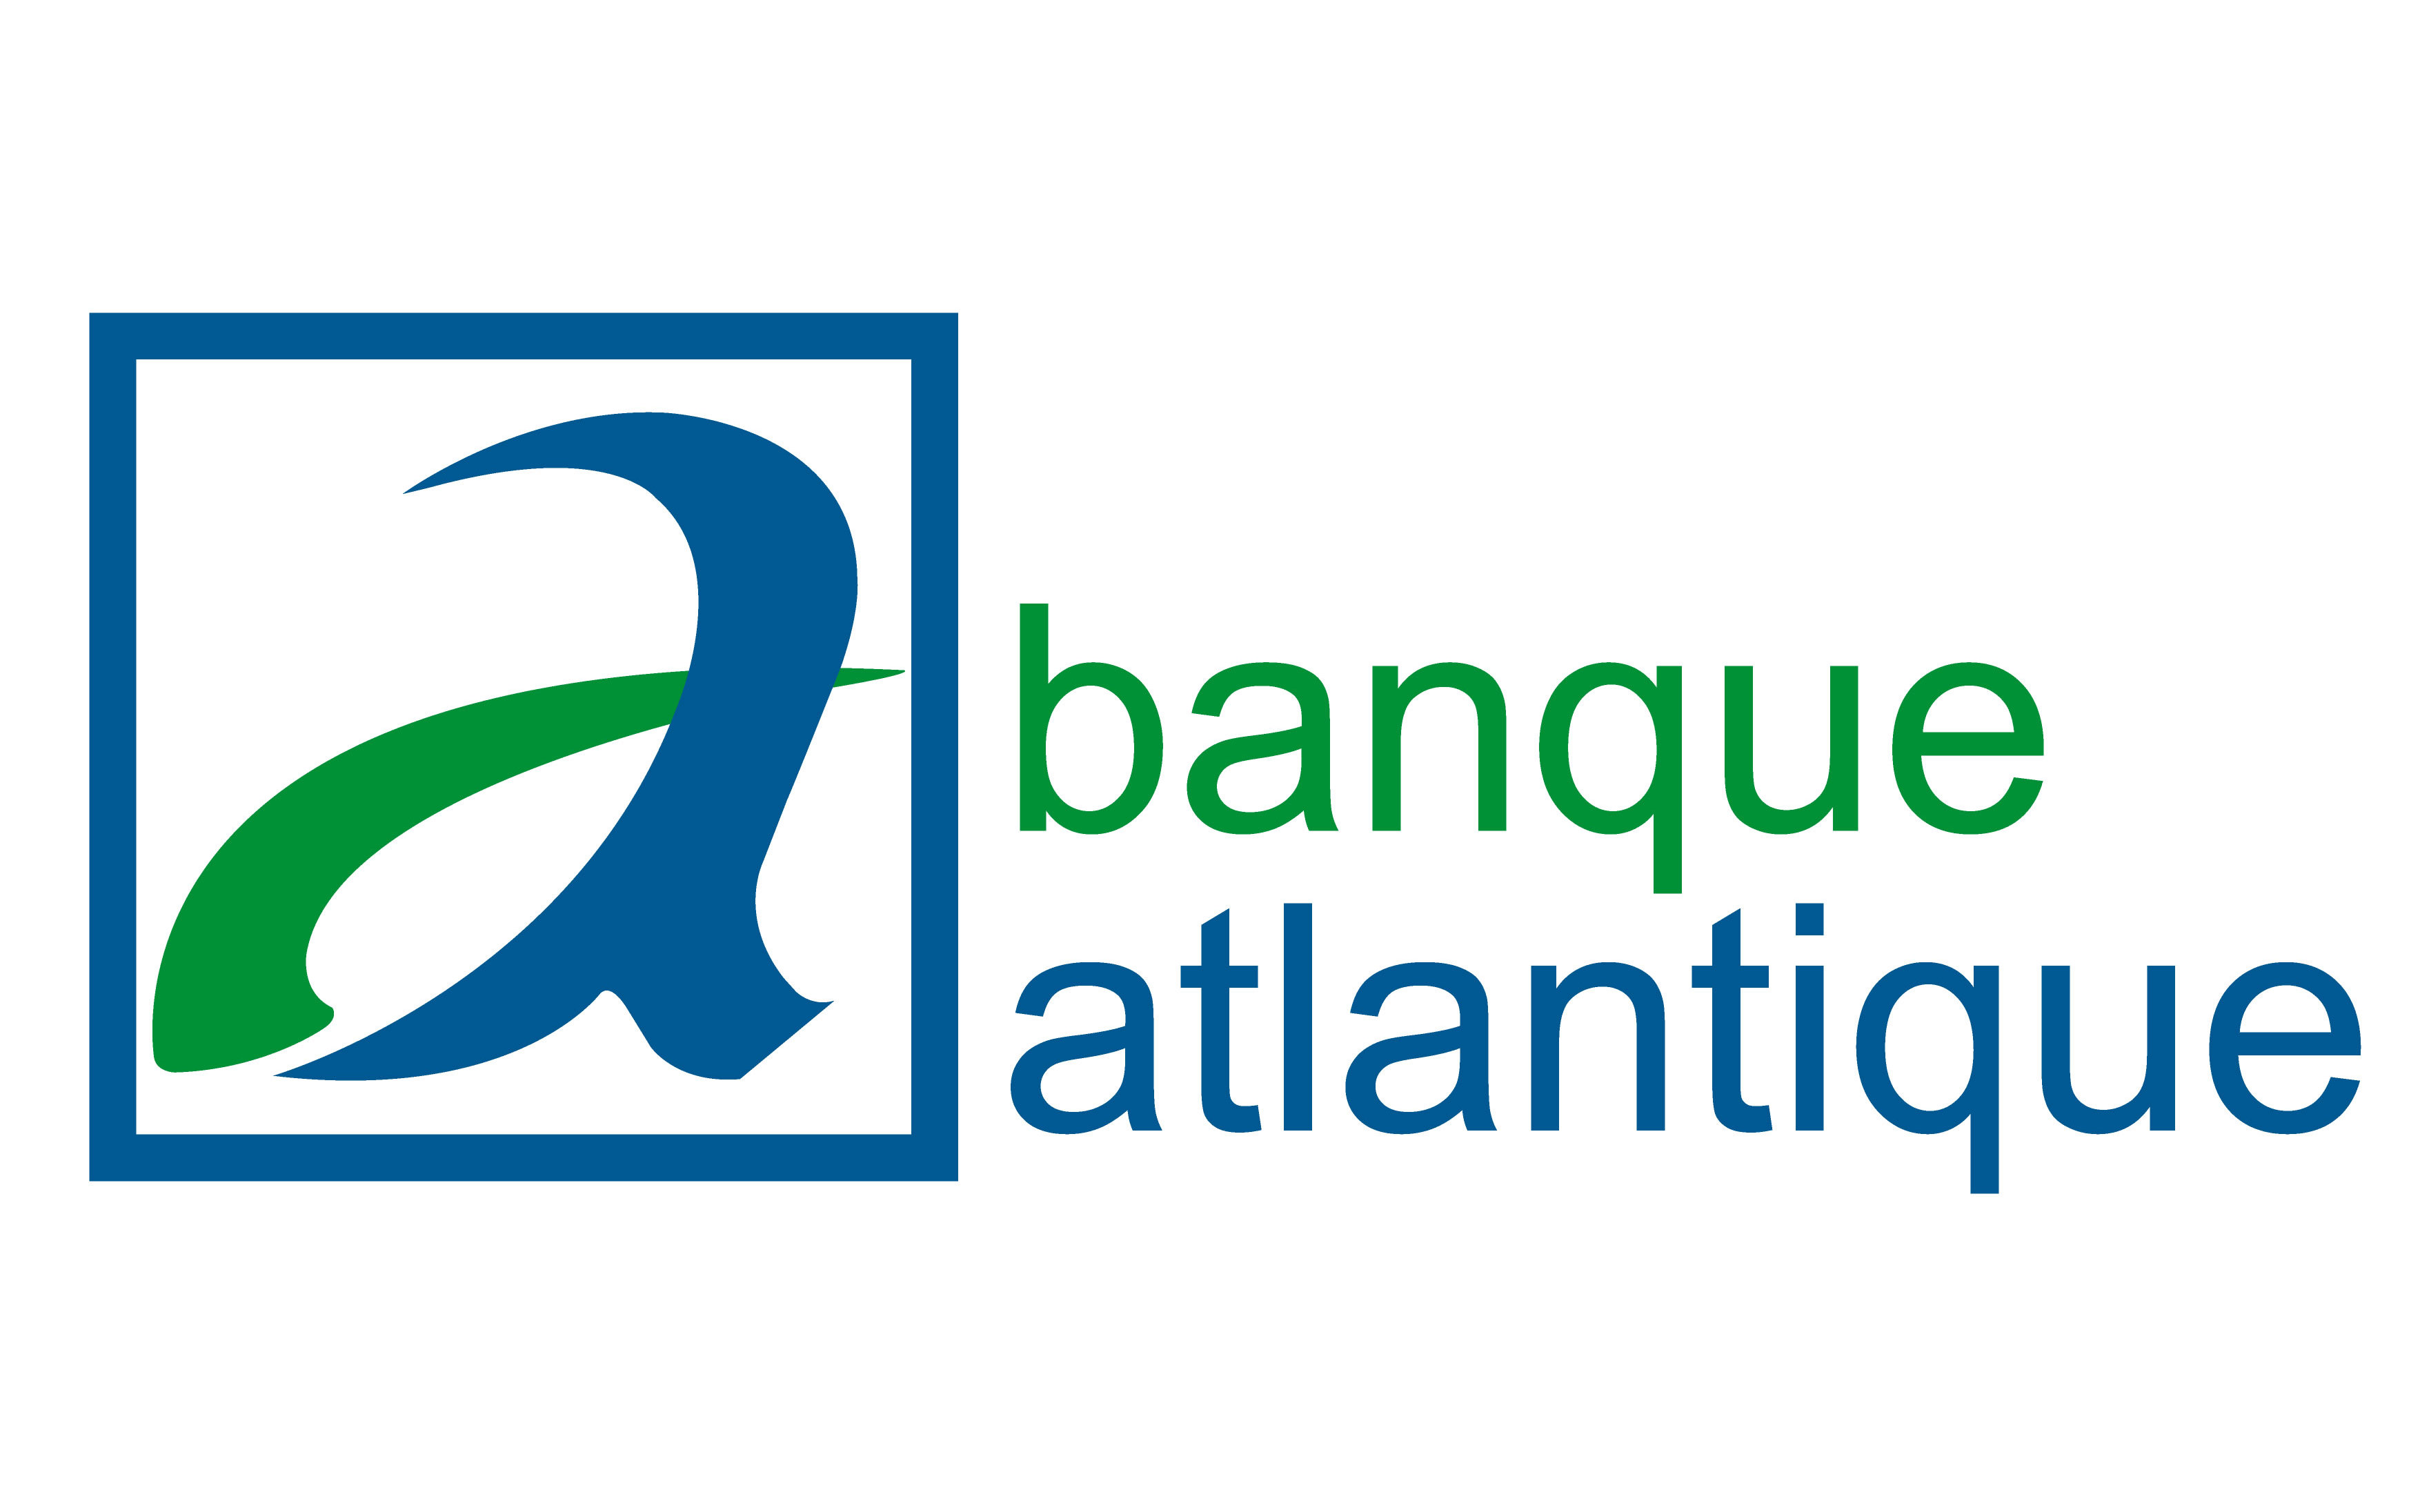 Banque Atlantique Côte d'Ivoire (BACI)